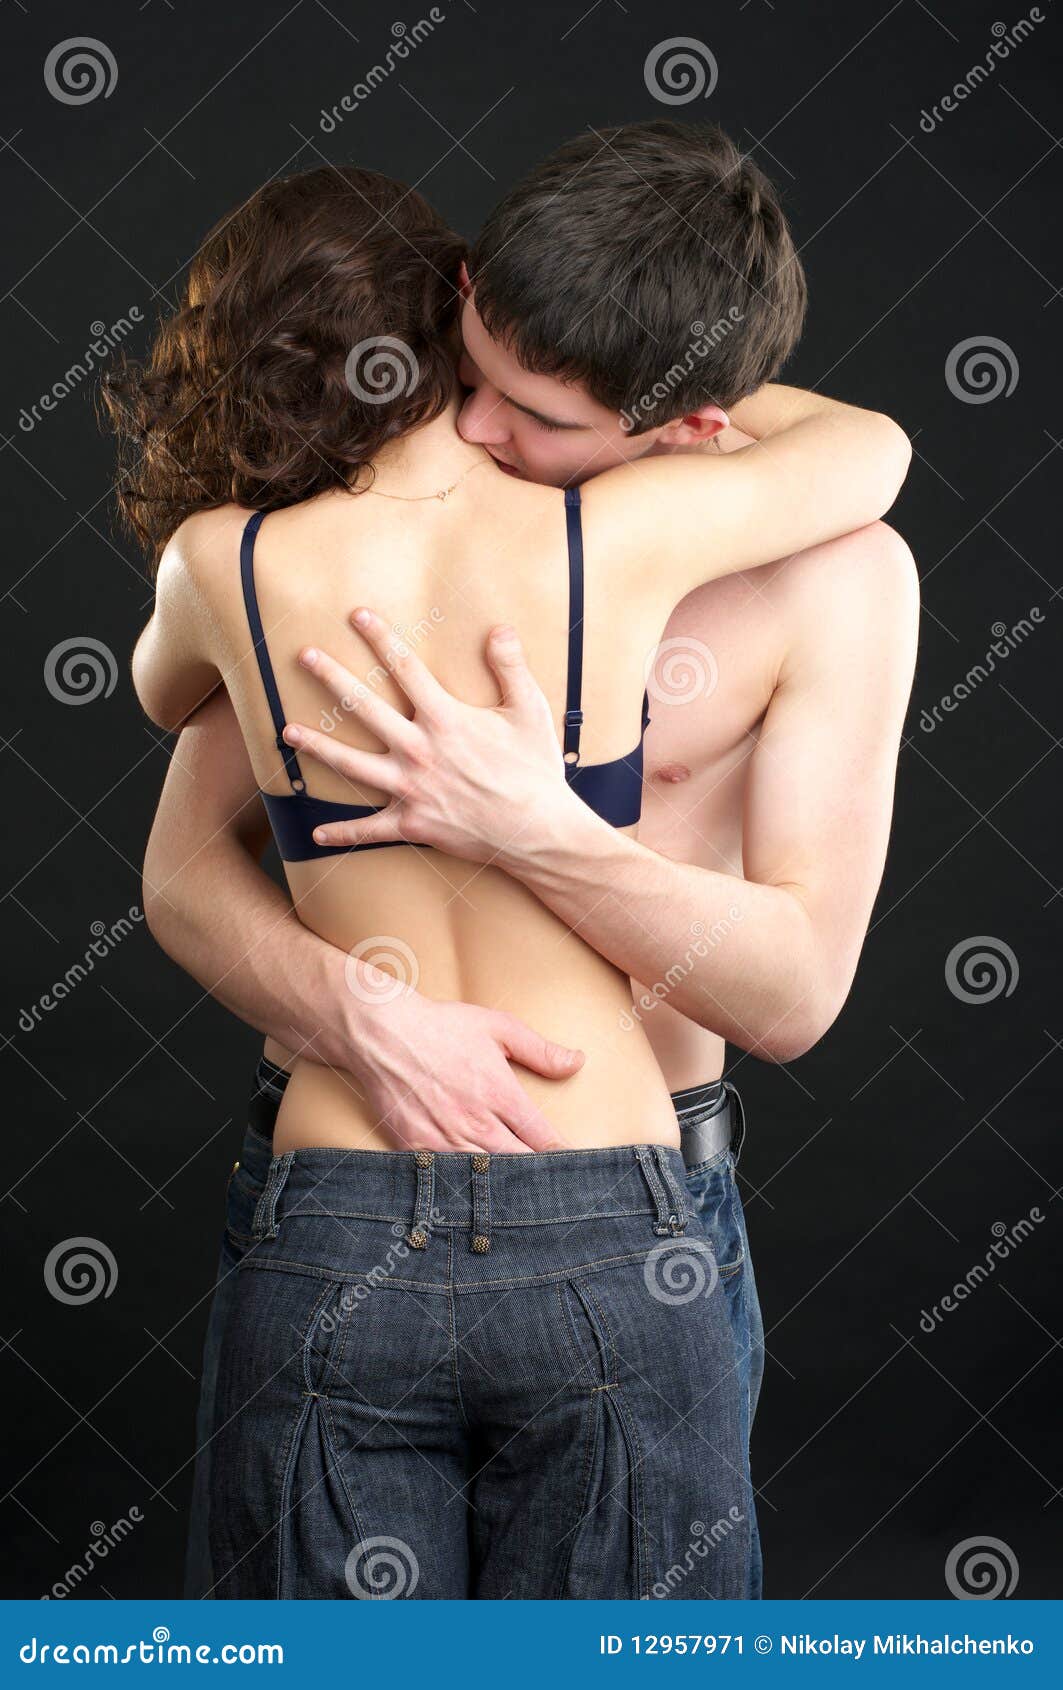 парень целует в грудь что это значит фото 73